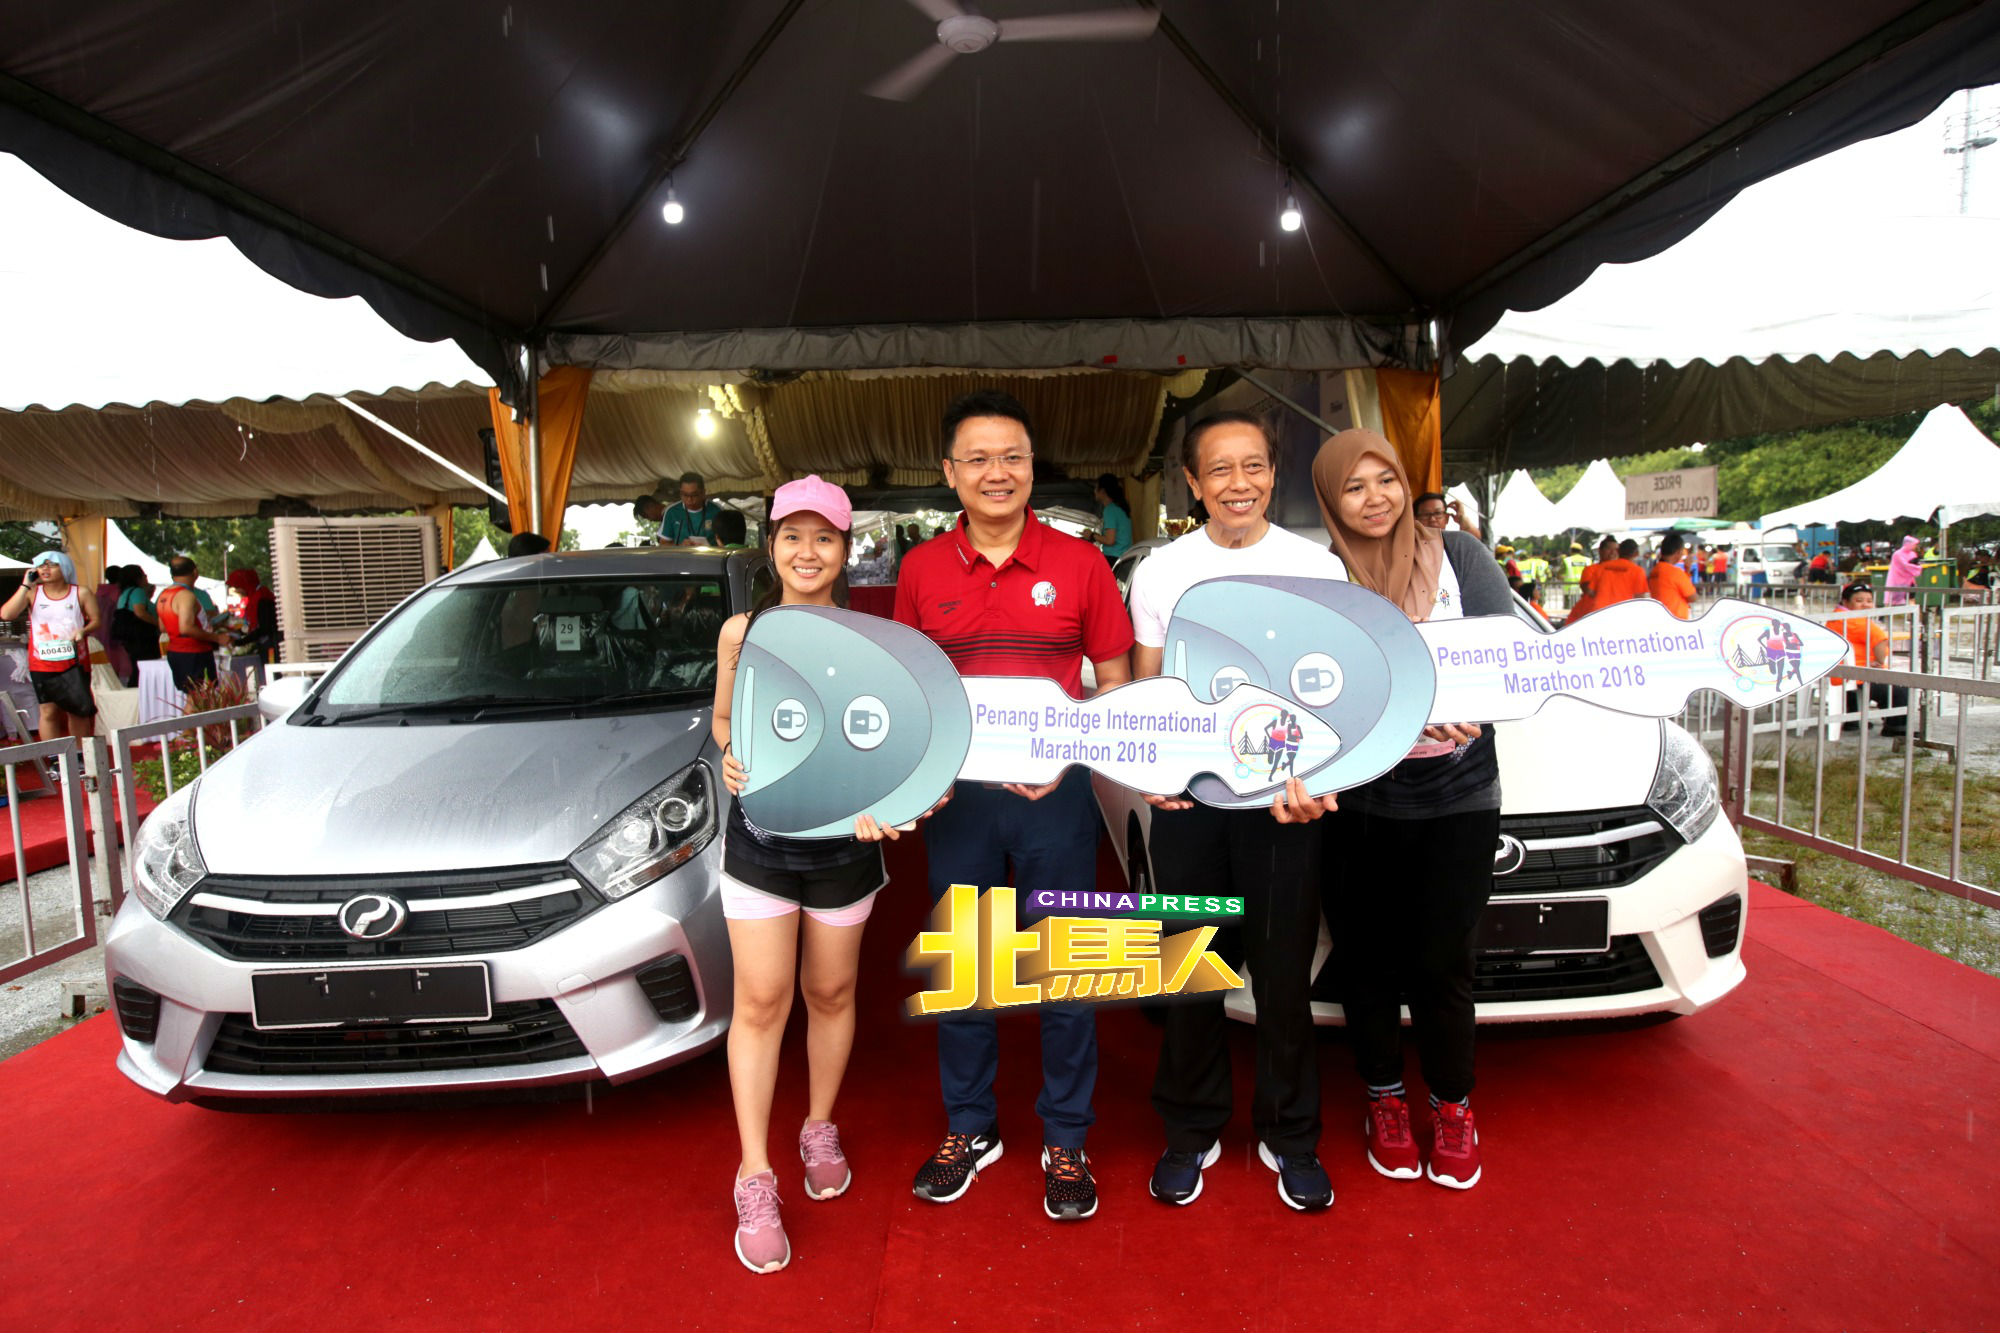 杨顺兴（左2起）及马拉松竞跑总监拿督艾迪，移交汽车钥匙给许咏诗（左起）及法依鲁斯。